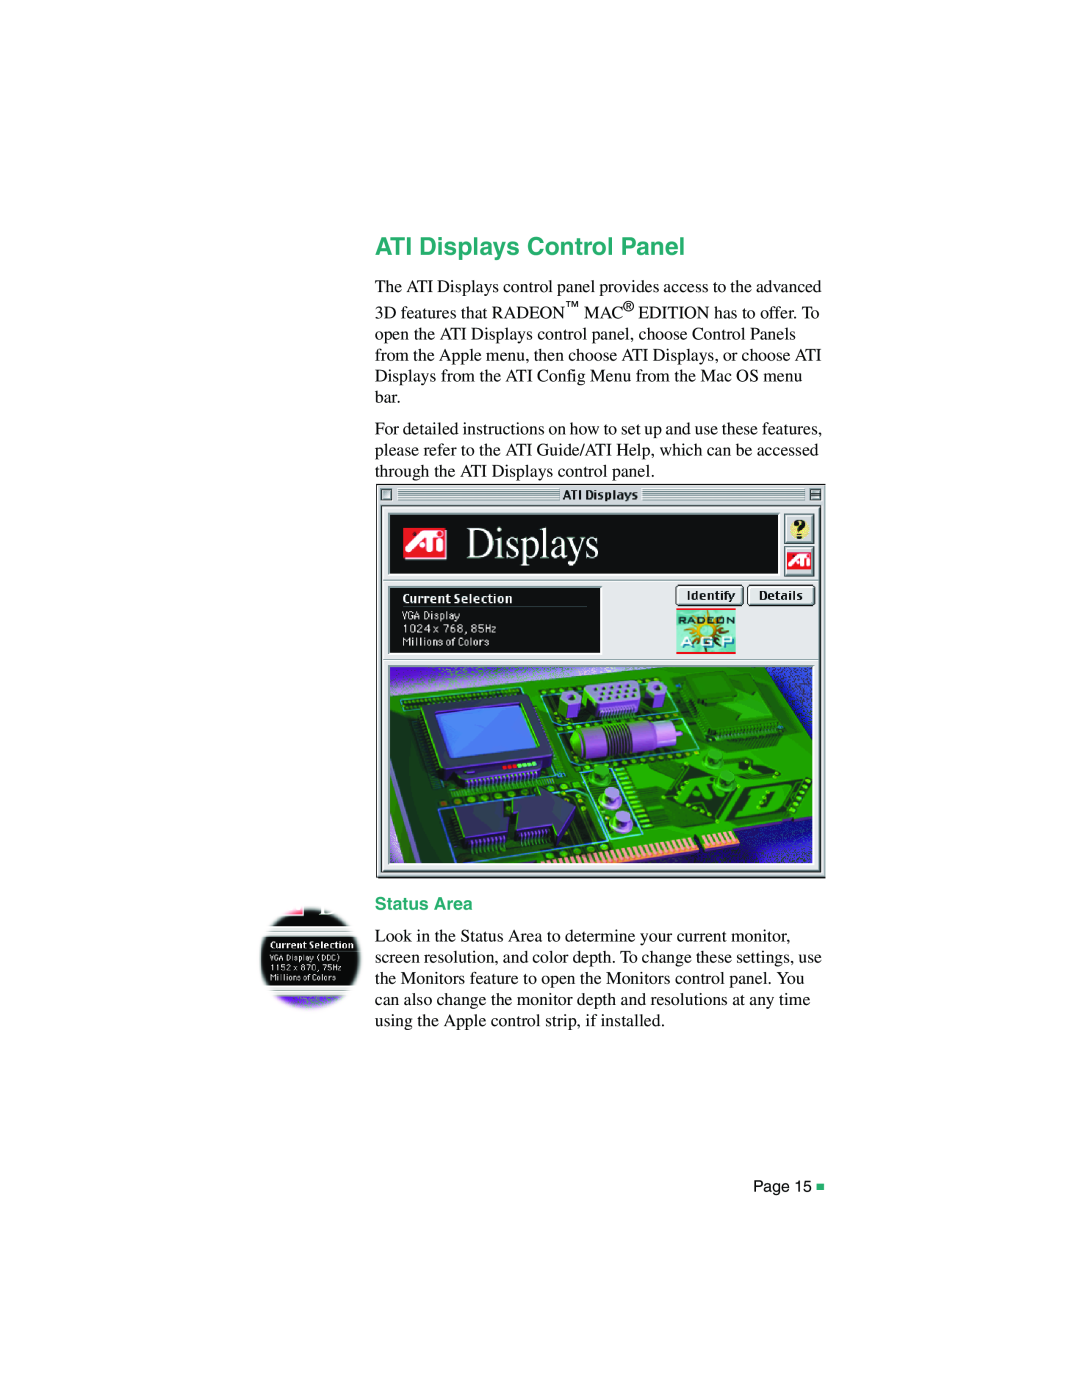 ATI Technologies RADEON MAC EDITION, 107-40214-20 manual ATI Displays Control Panel, Status Area 